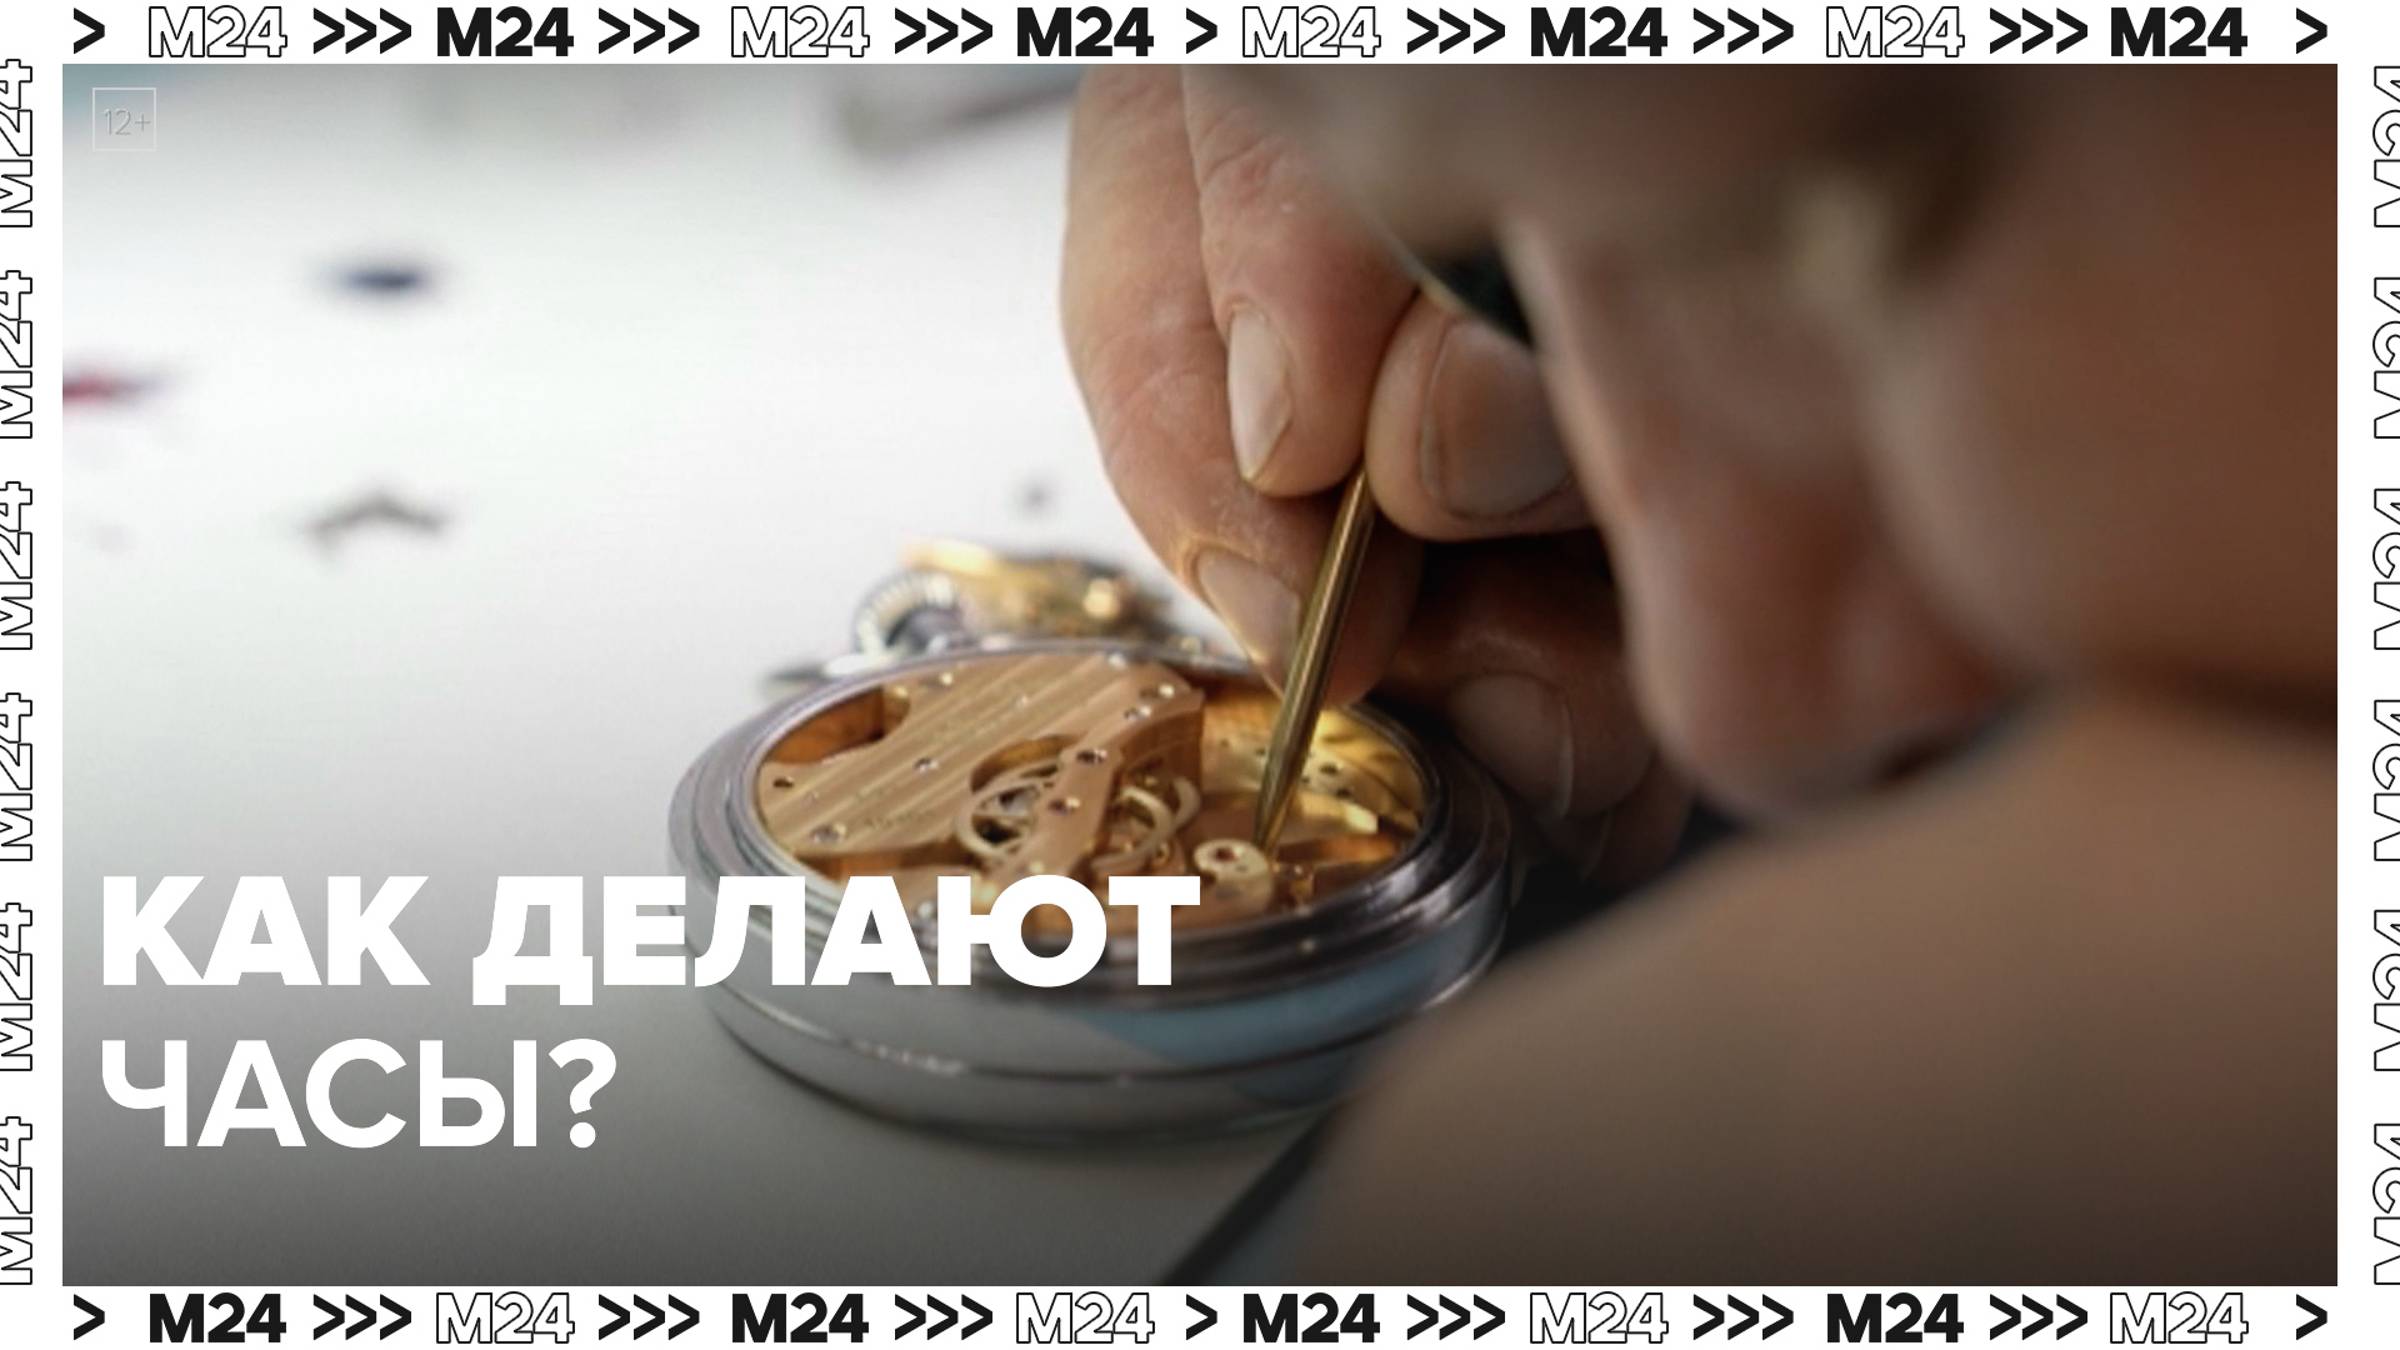 Как делают часы? — Москва24|Контент